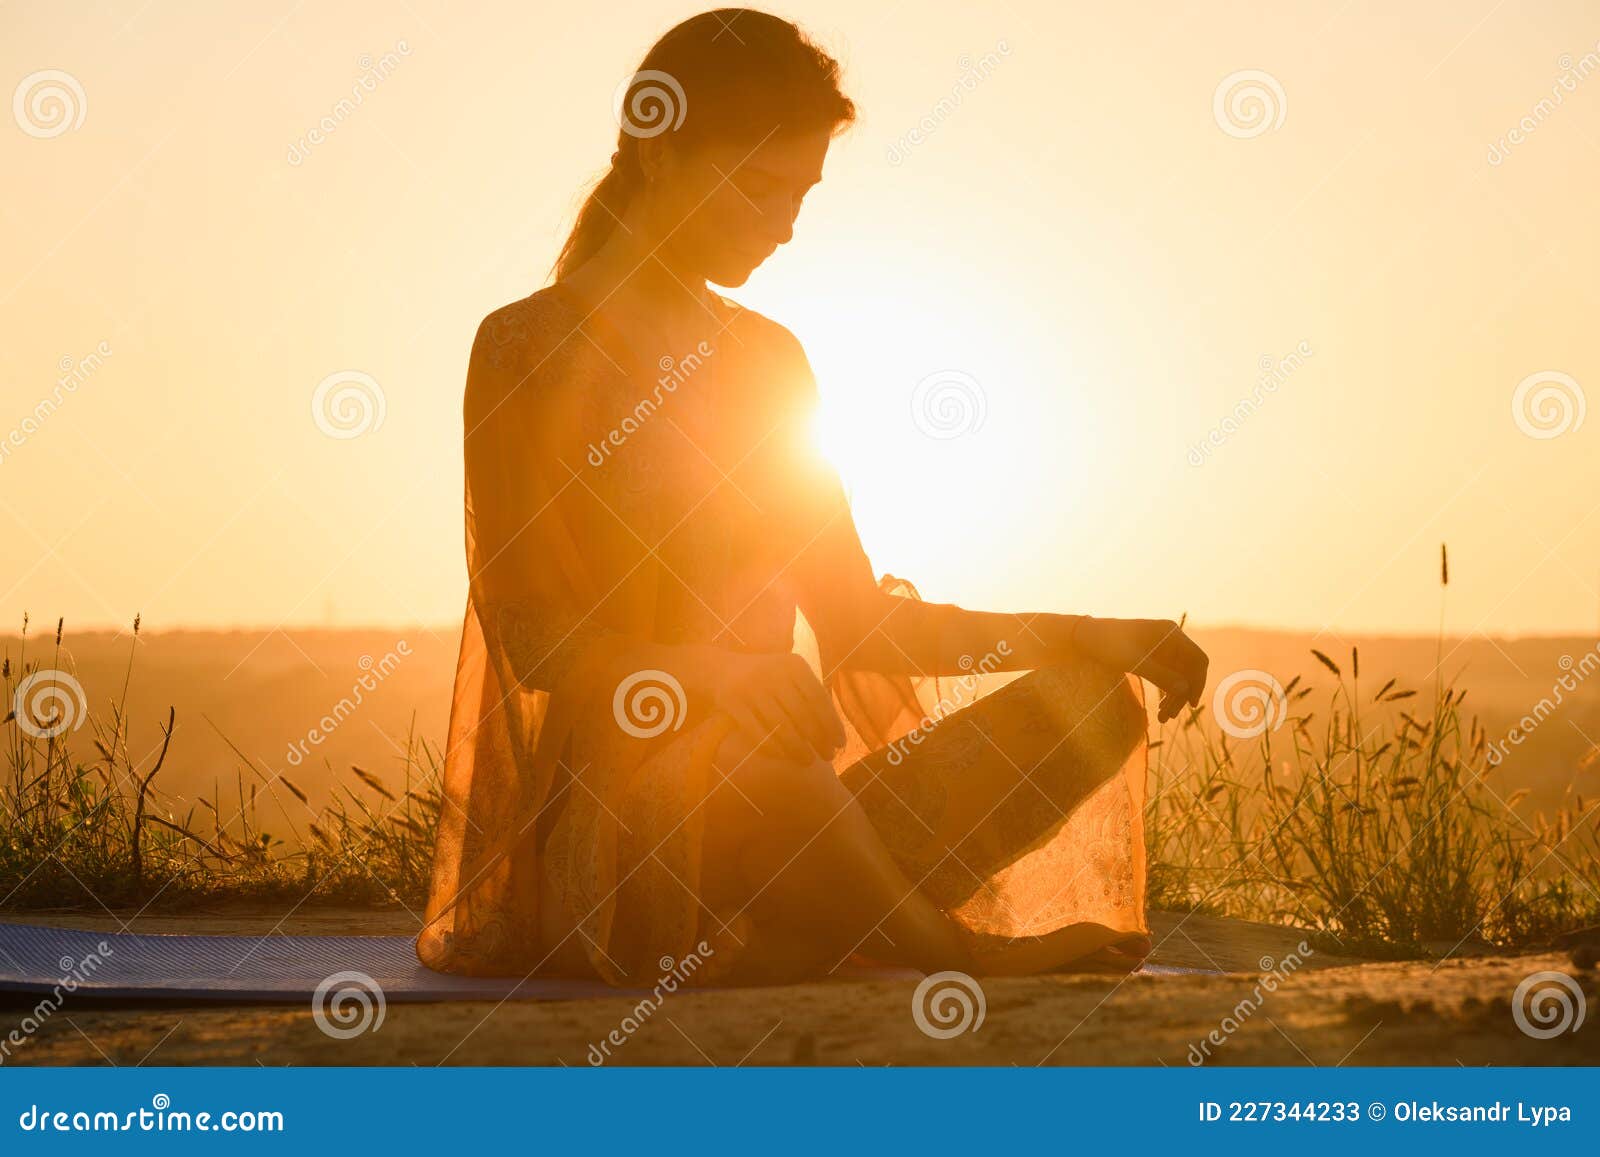 Silueta De Mujer Sentada En Alfombra De Yoga Imagen de archivo - Imagen de verano, oscuridad: 227344233